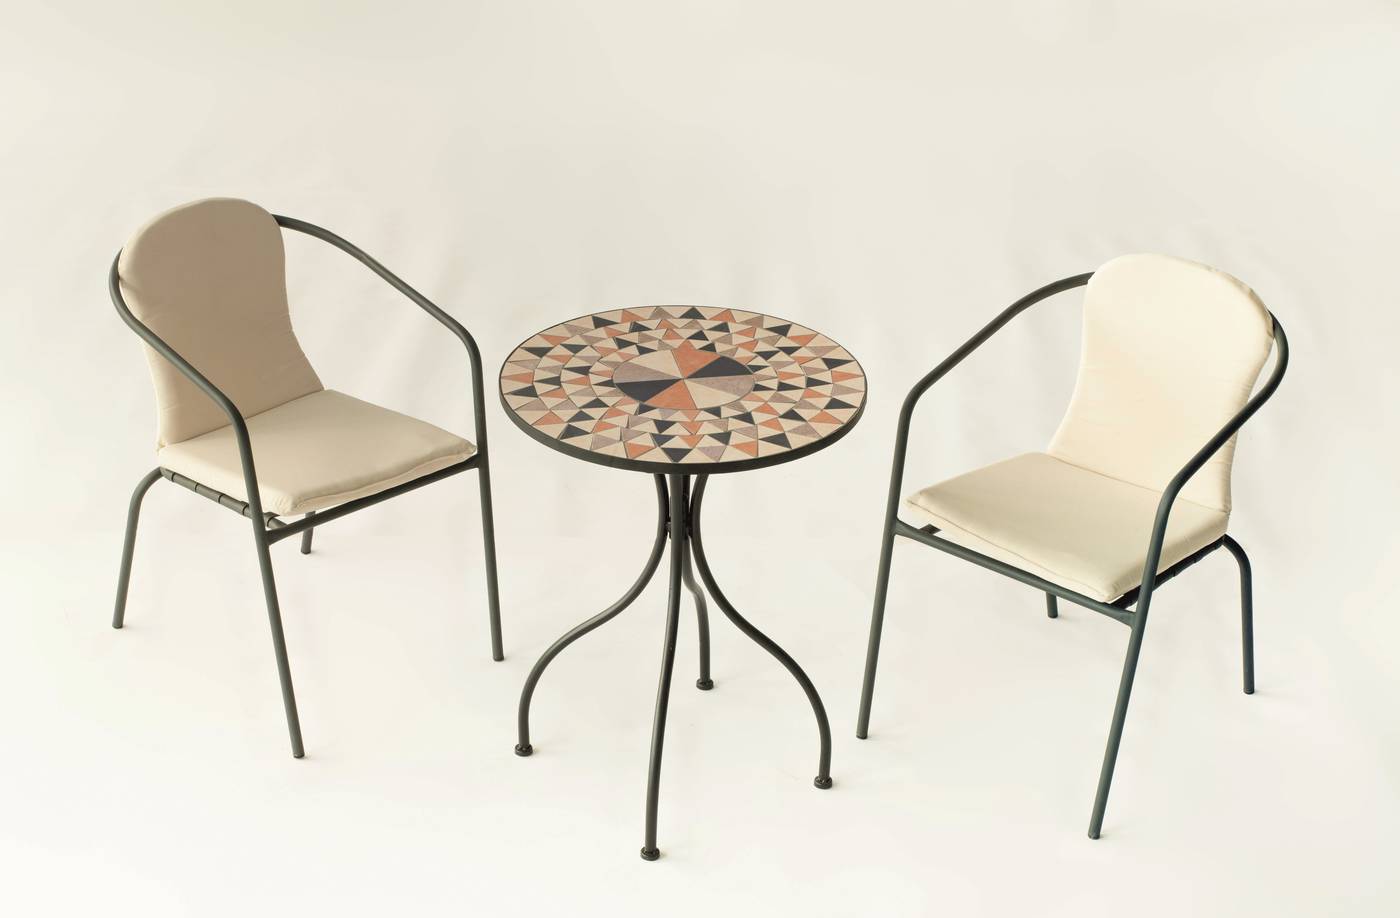 Mesa de forja color antracita, con tablero mosaico de 60 cm + 2 sillones apilables de aluminio con cojín.